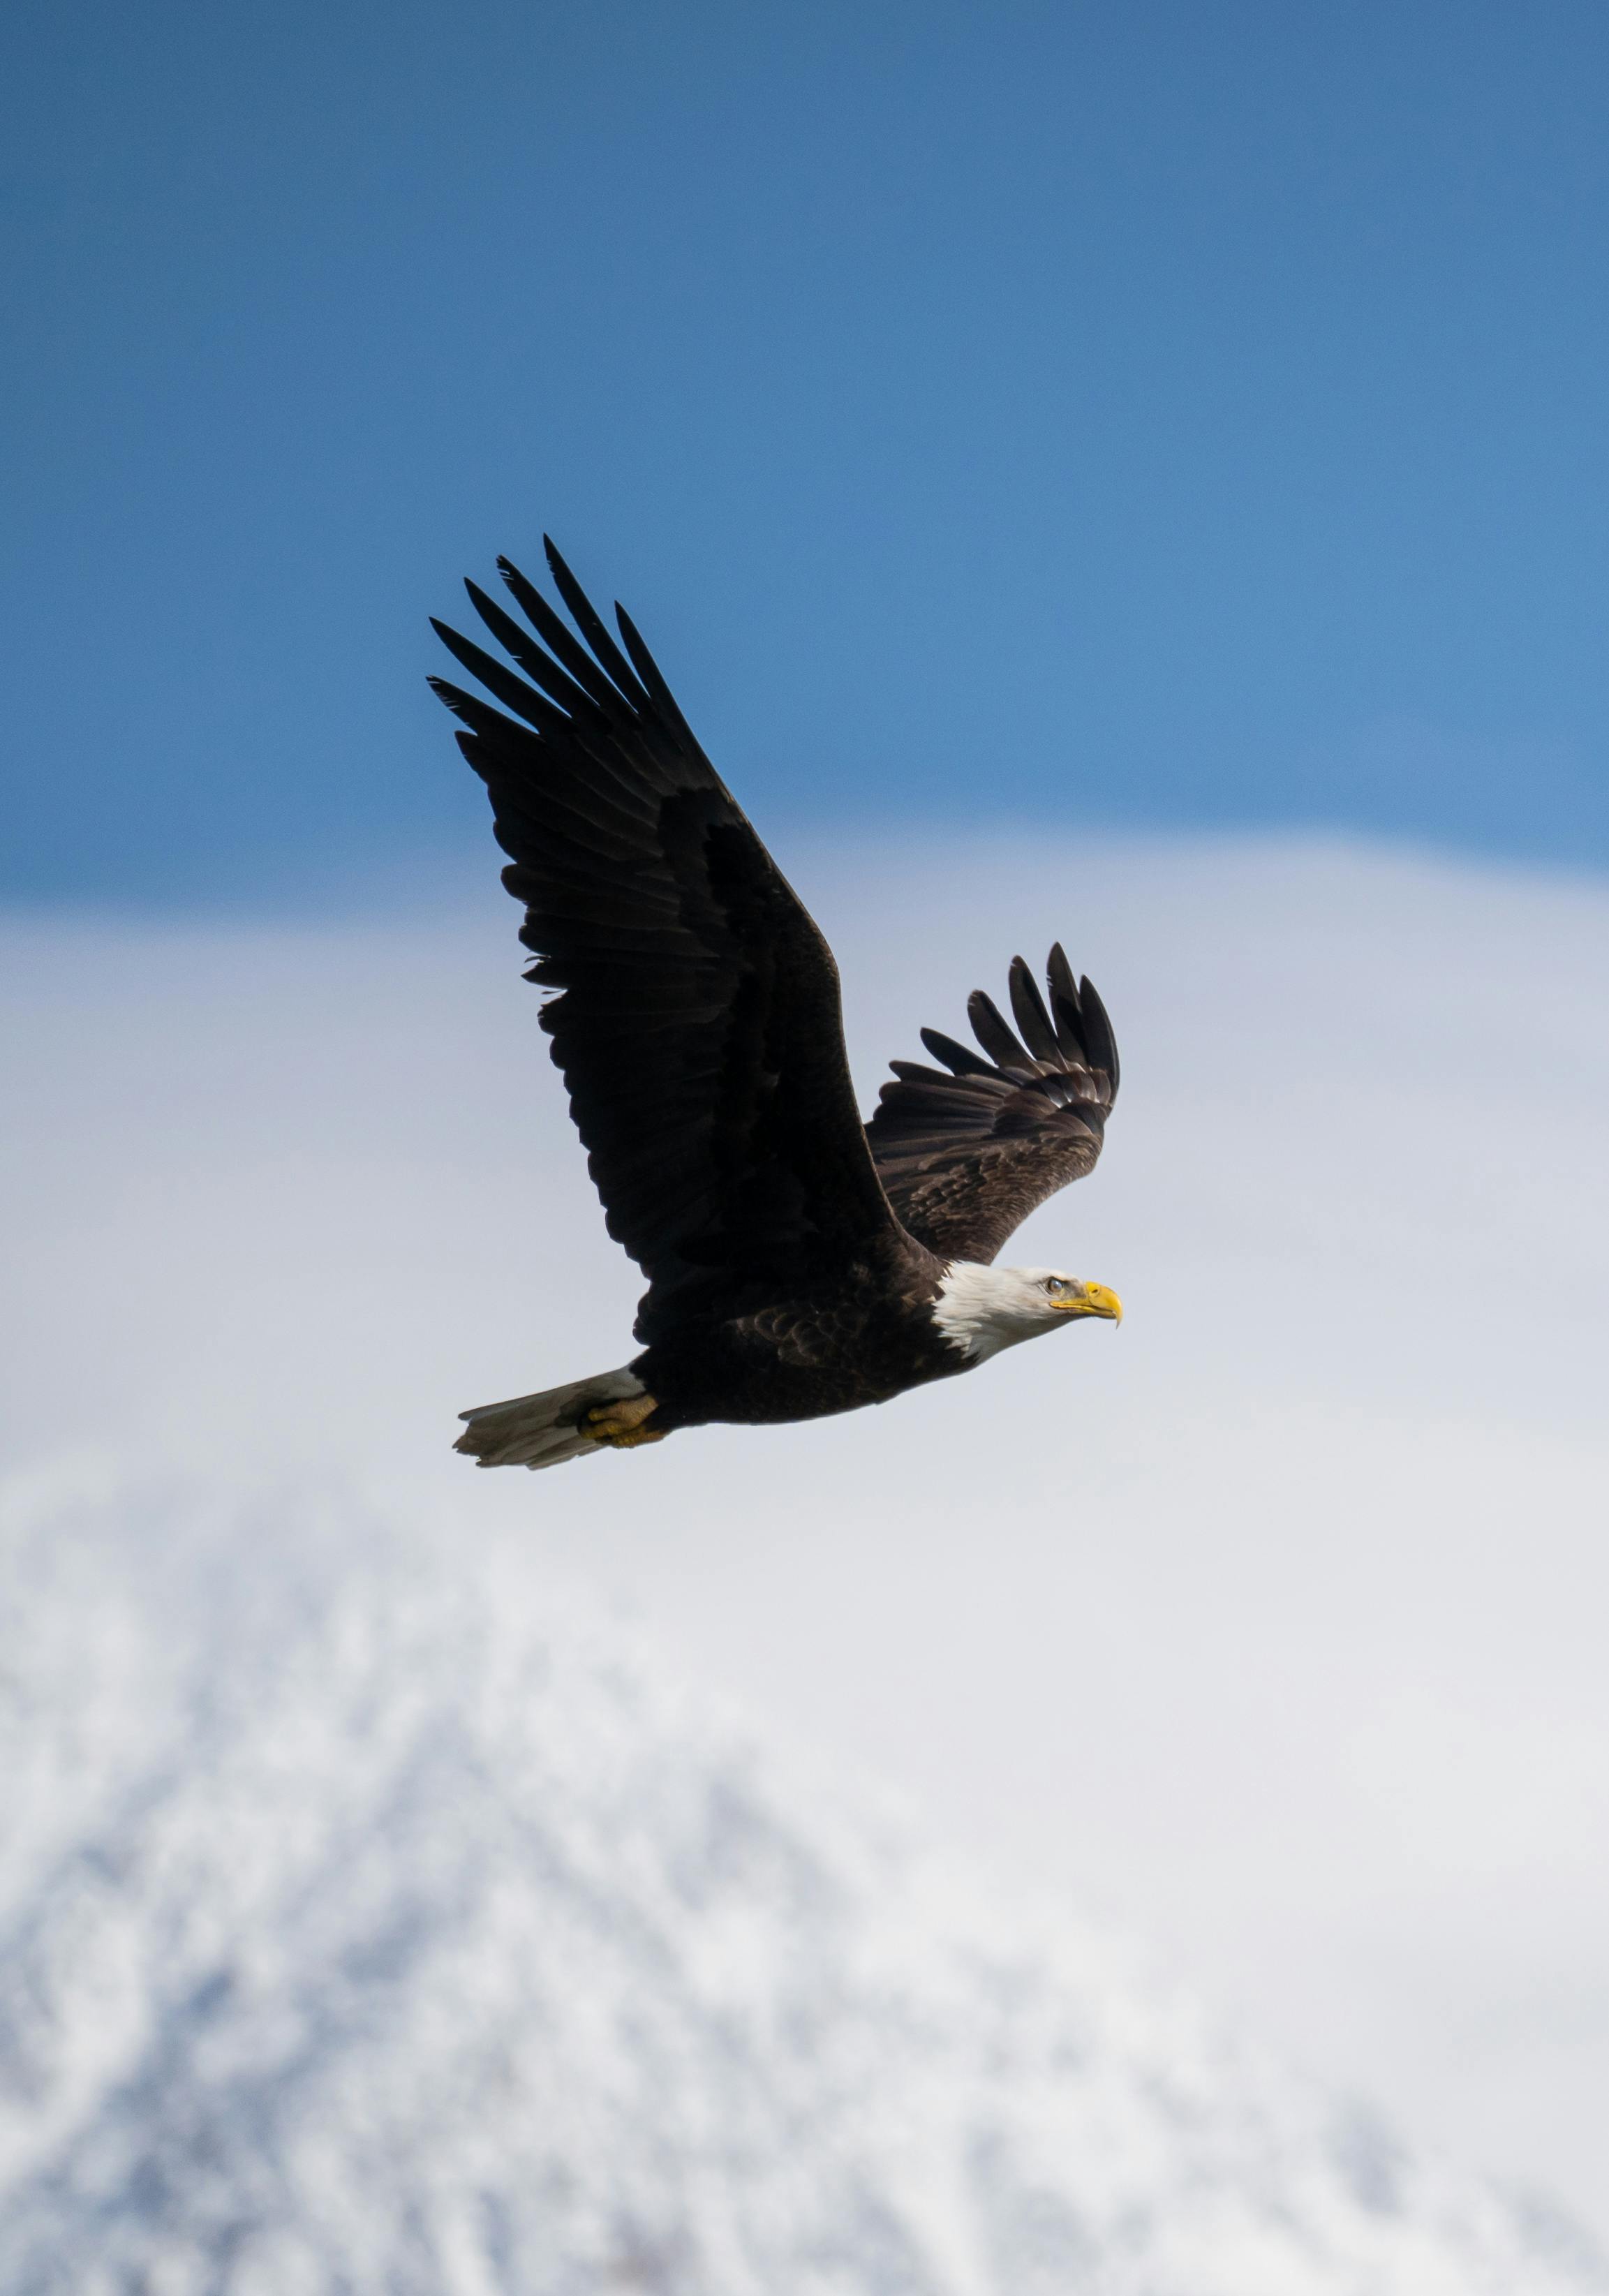 + Fotos y Imágenes de Águila volando Gratis · Banco de Fotos Gratis